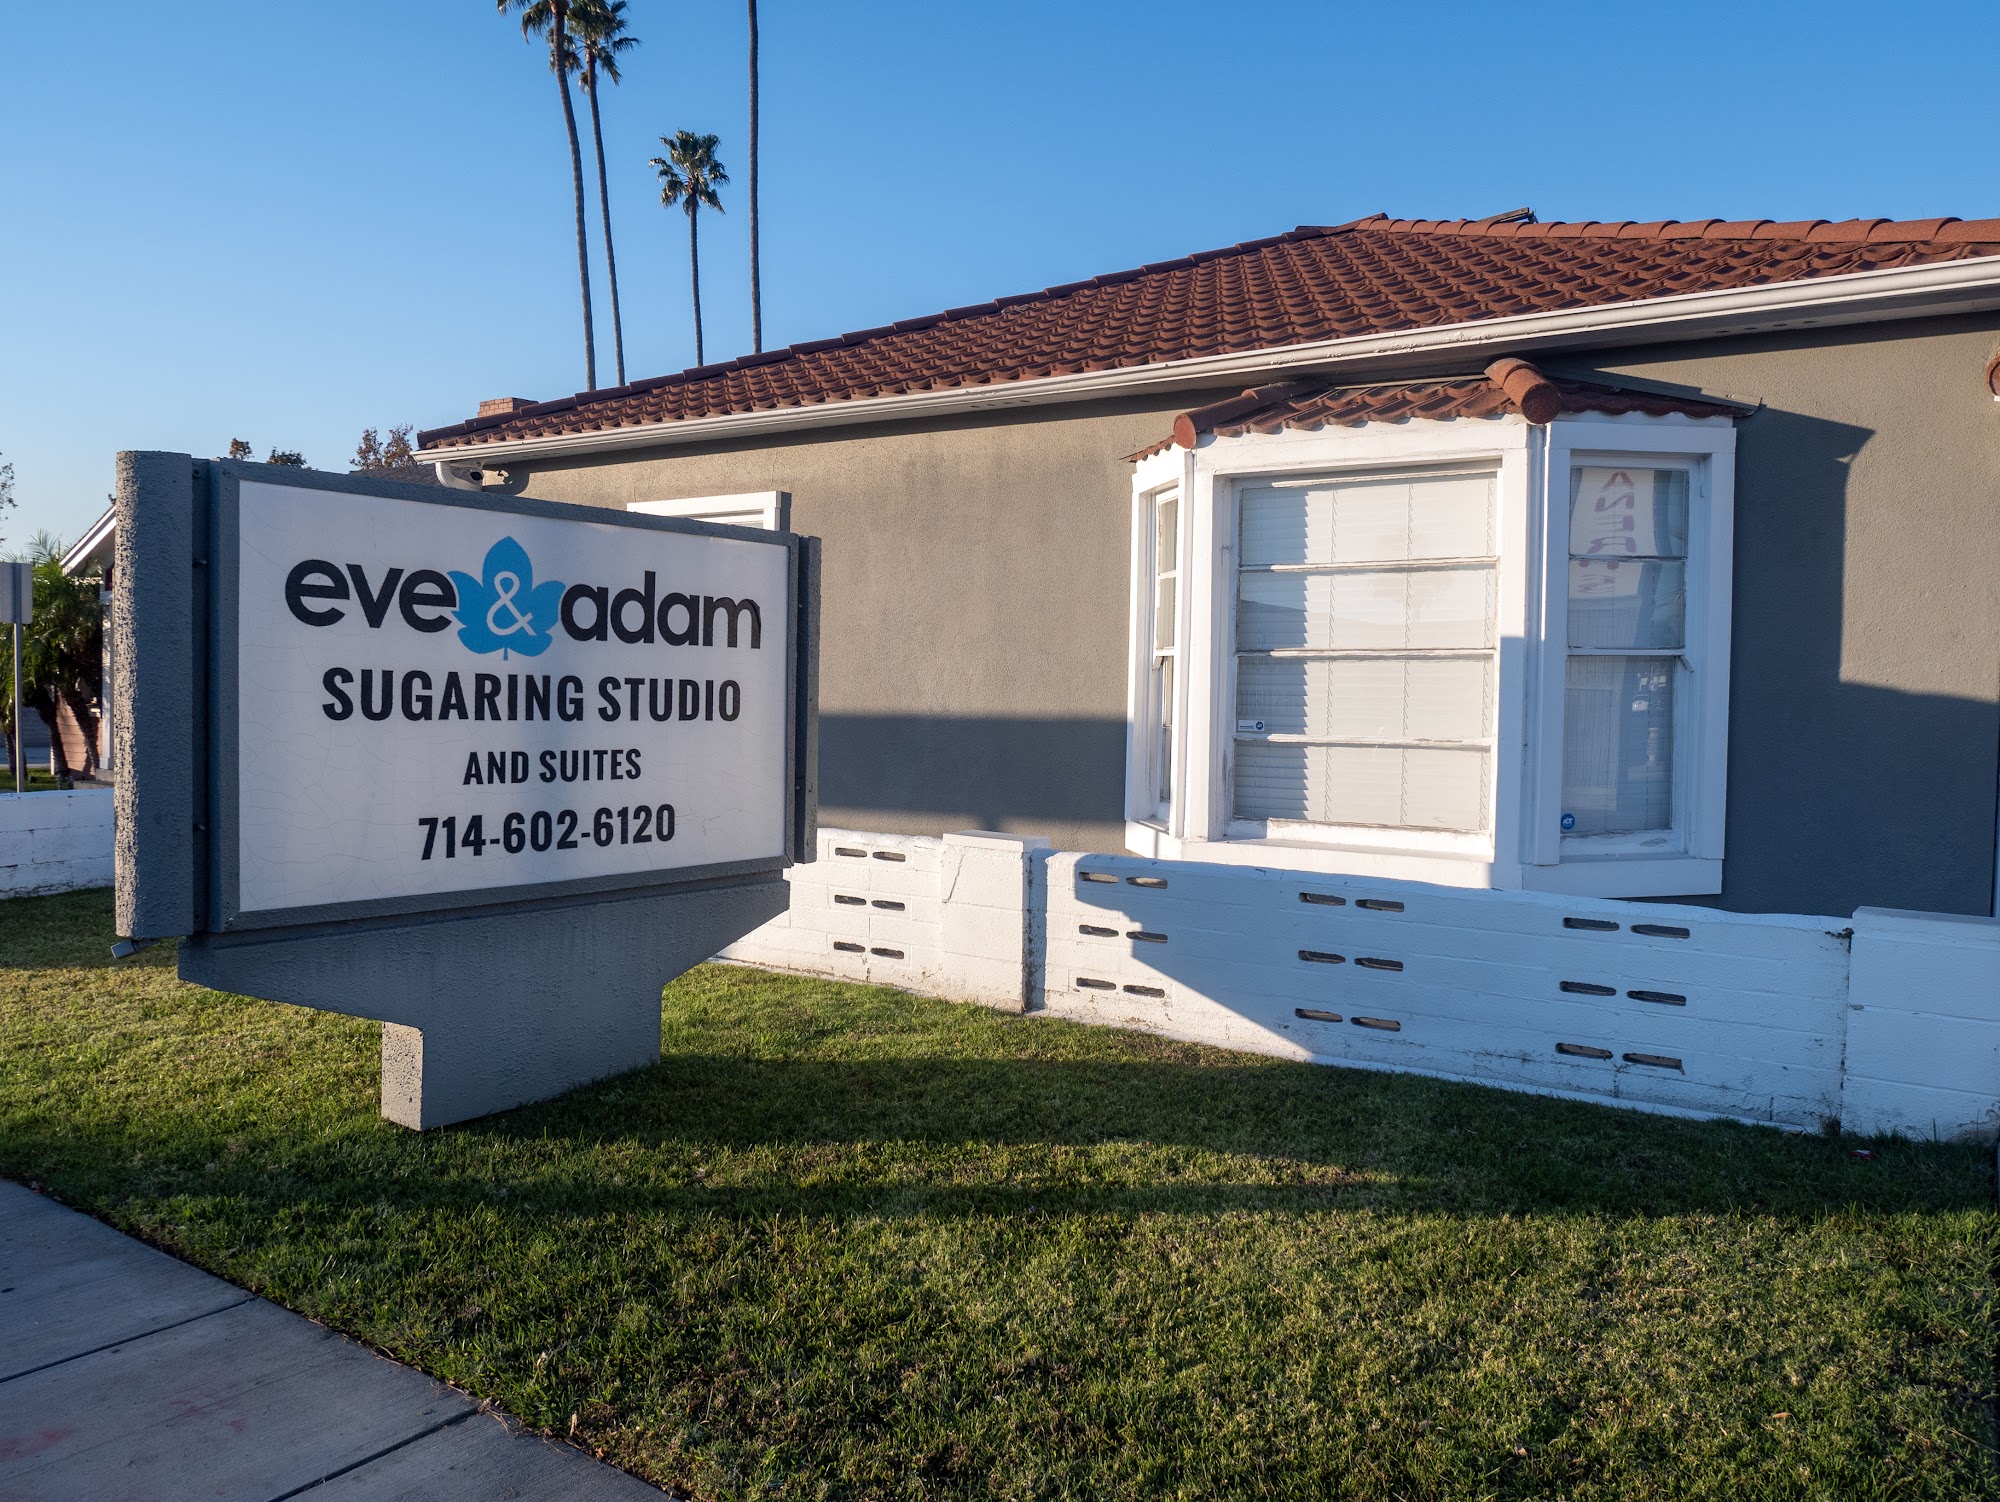 Eve & Adam Sugaring Studio